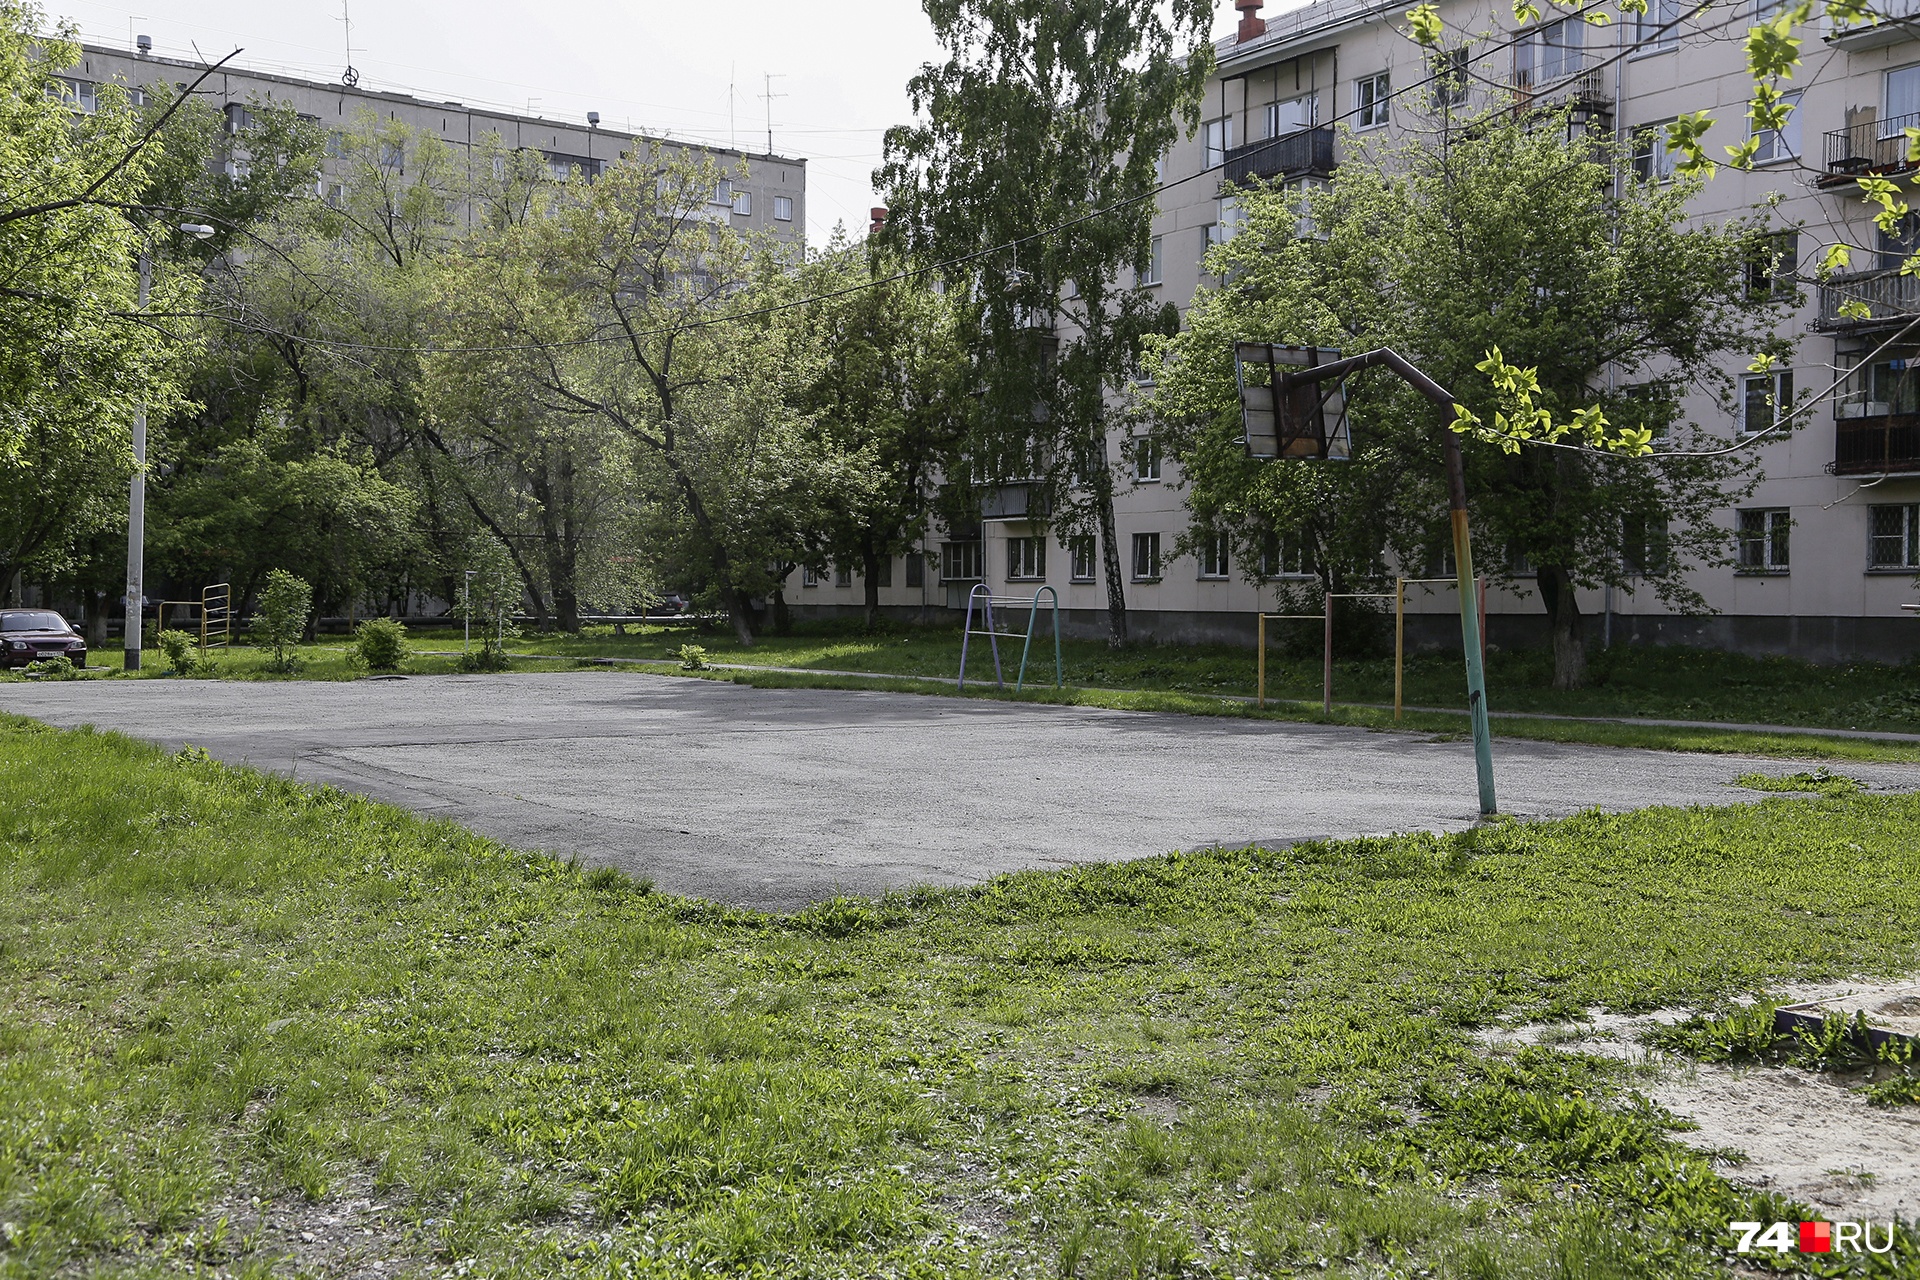 «Должно неплохо получиться»: в Челябинске впервые отремонтируют двор по канонам урбанистики